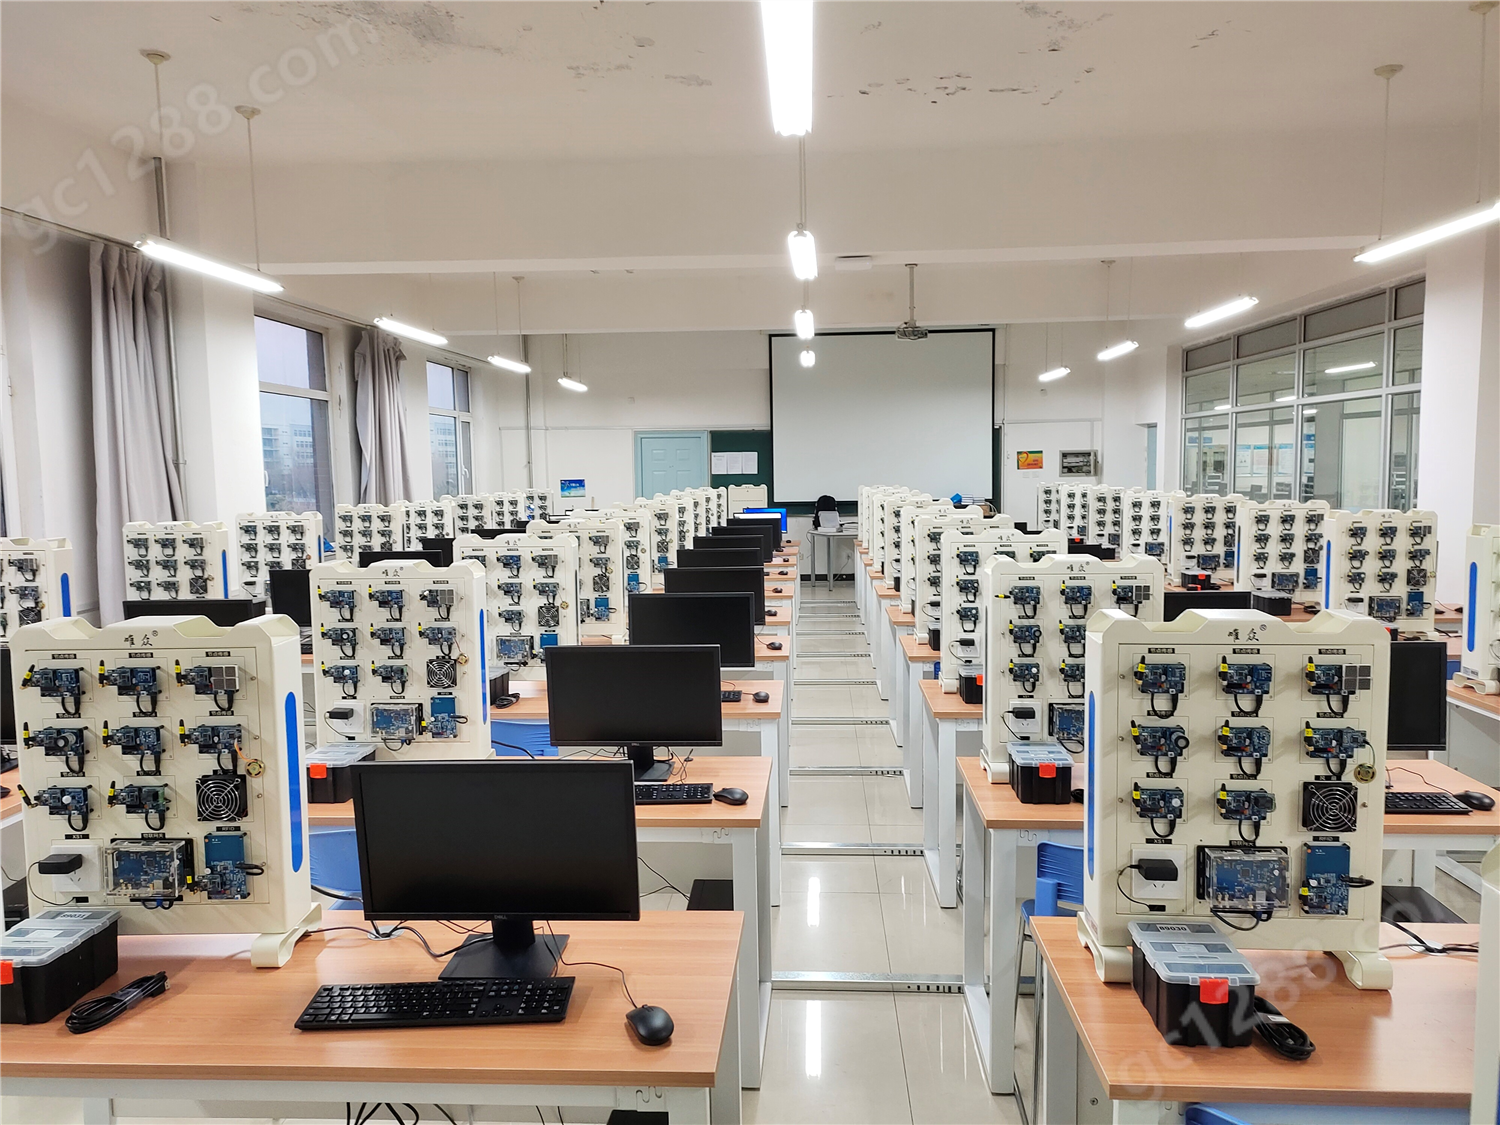 2020内蒙古机电职业技术学院嵌入式实训室